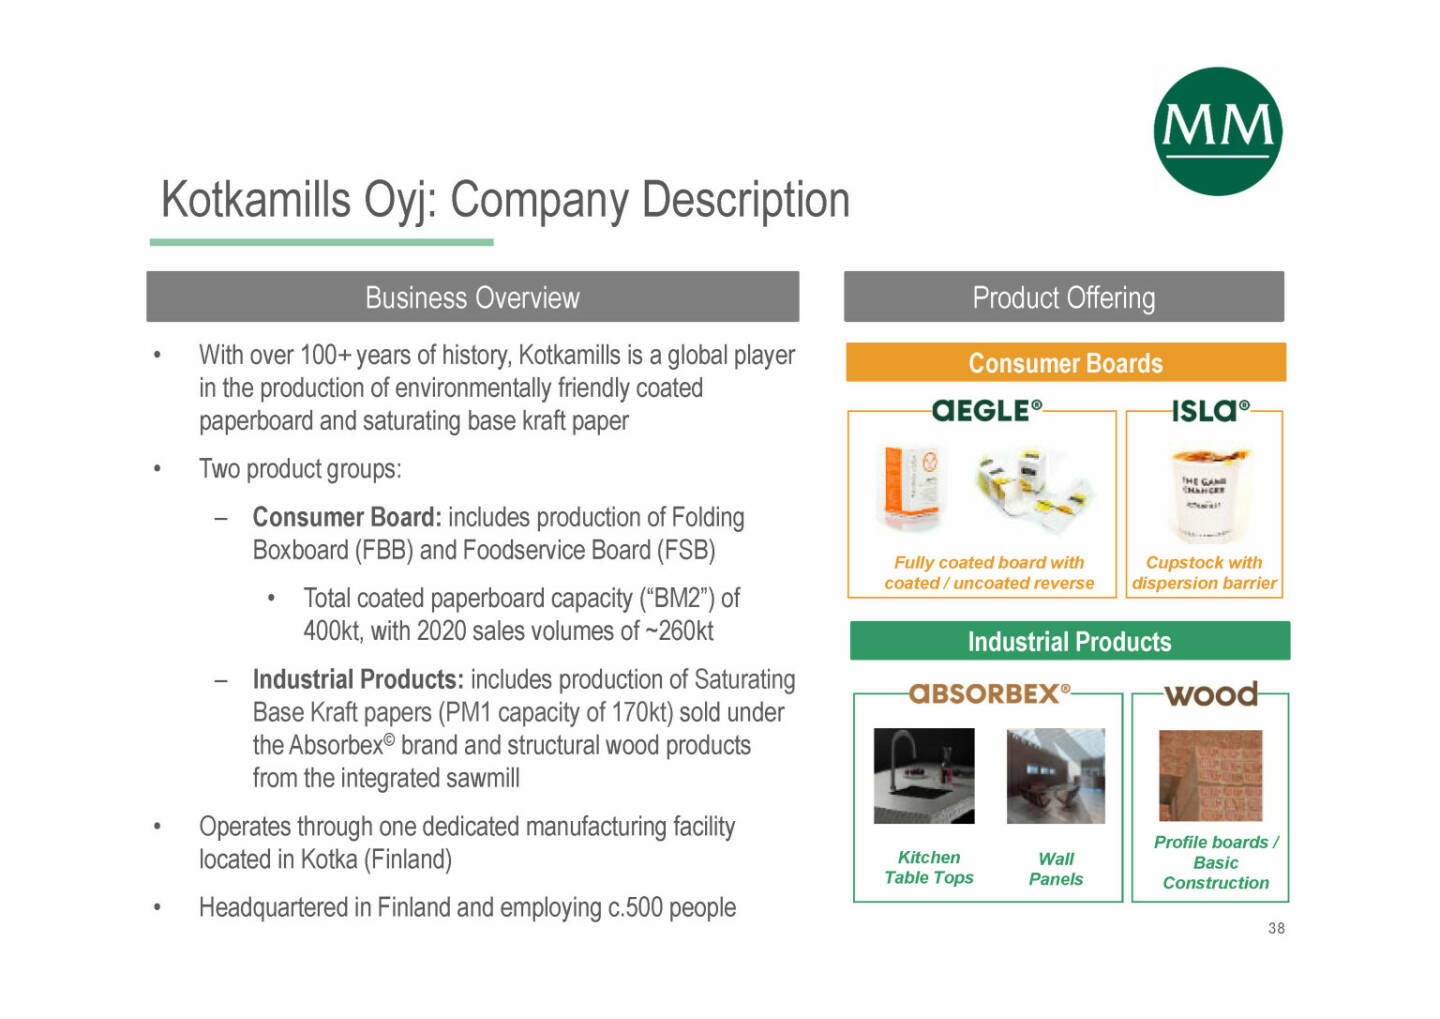 Mayr-Melnhof - Kotkamills Oyj: Company Description